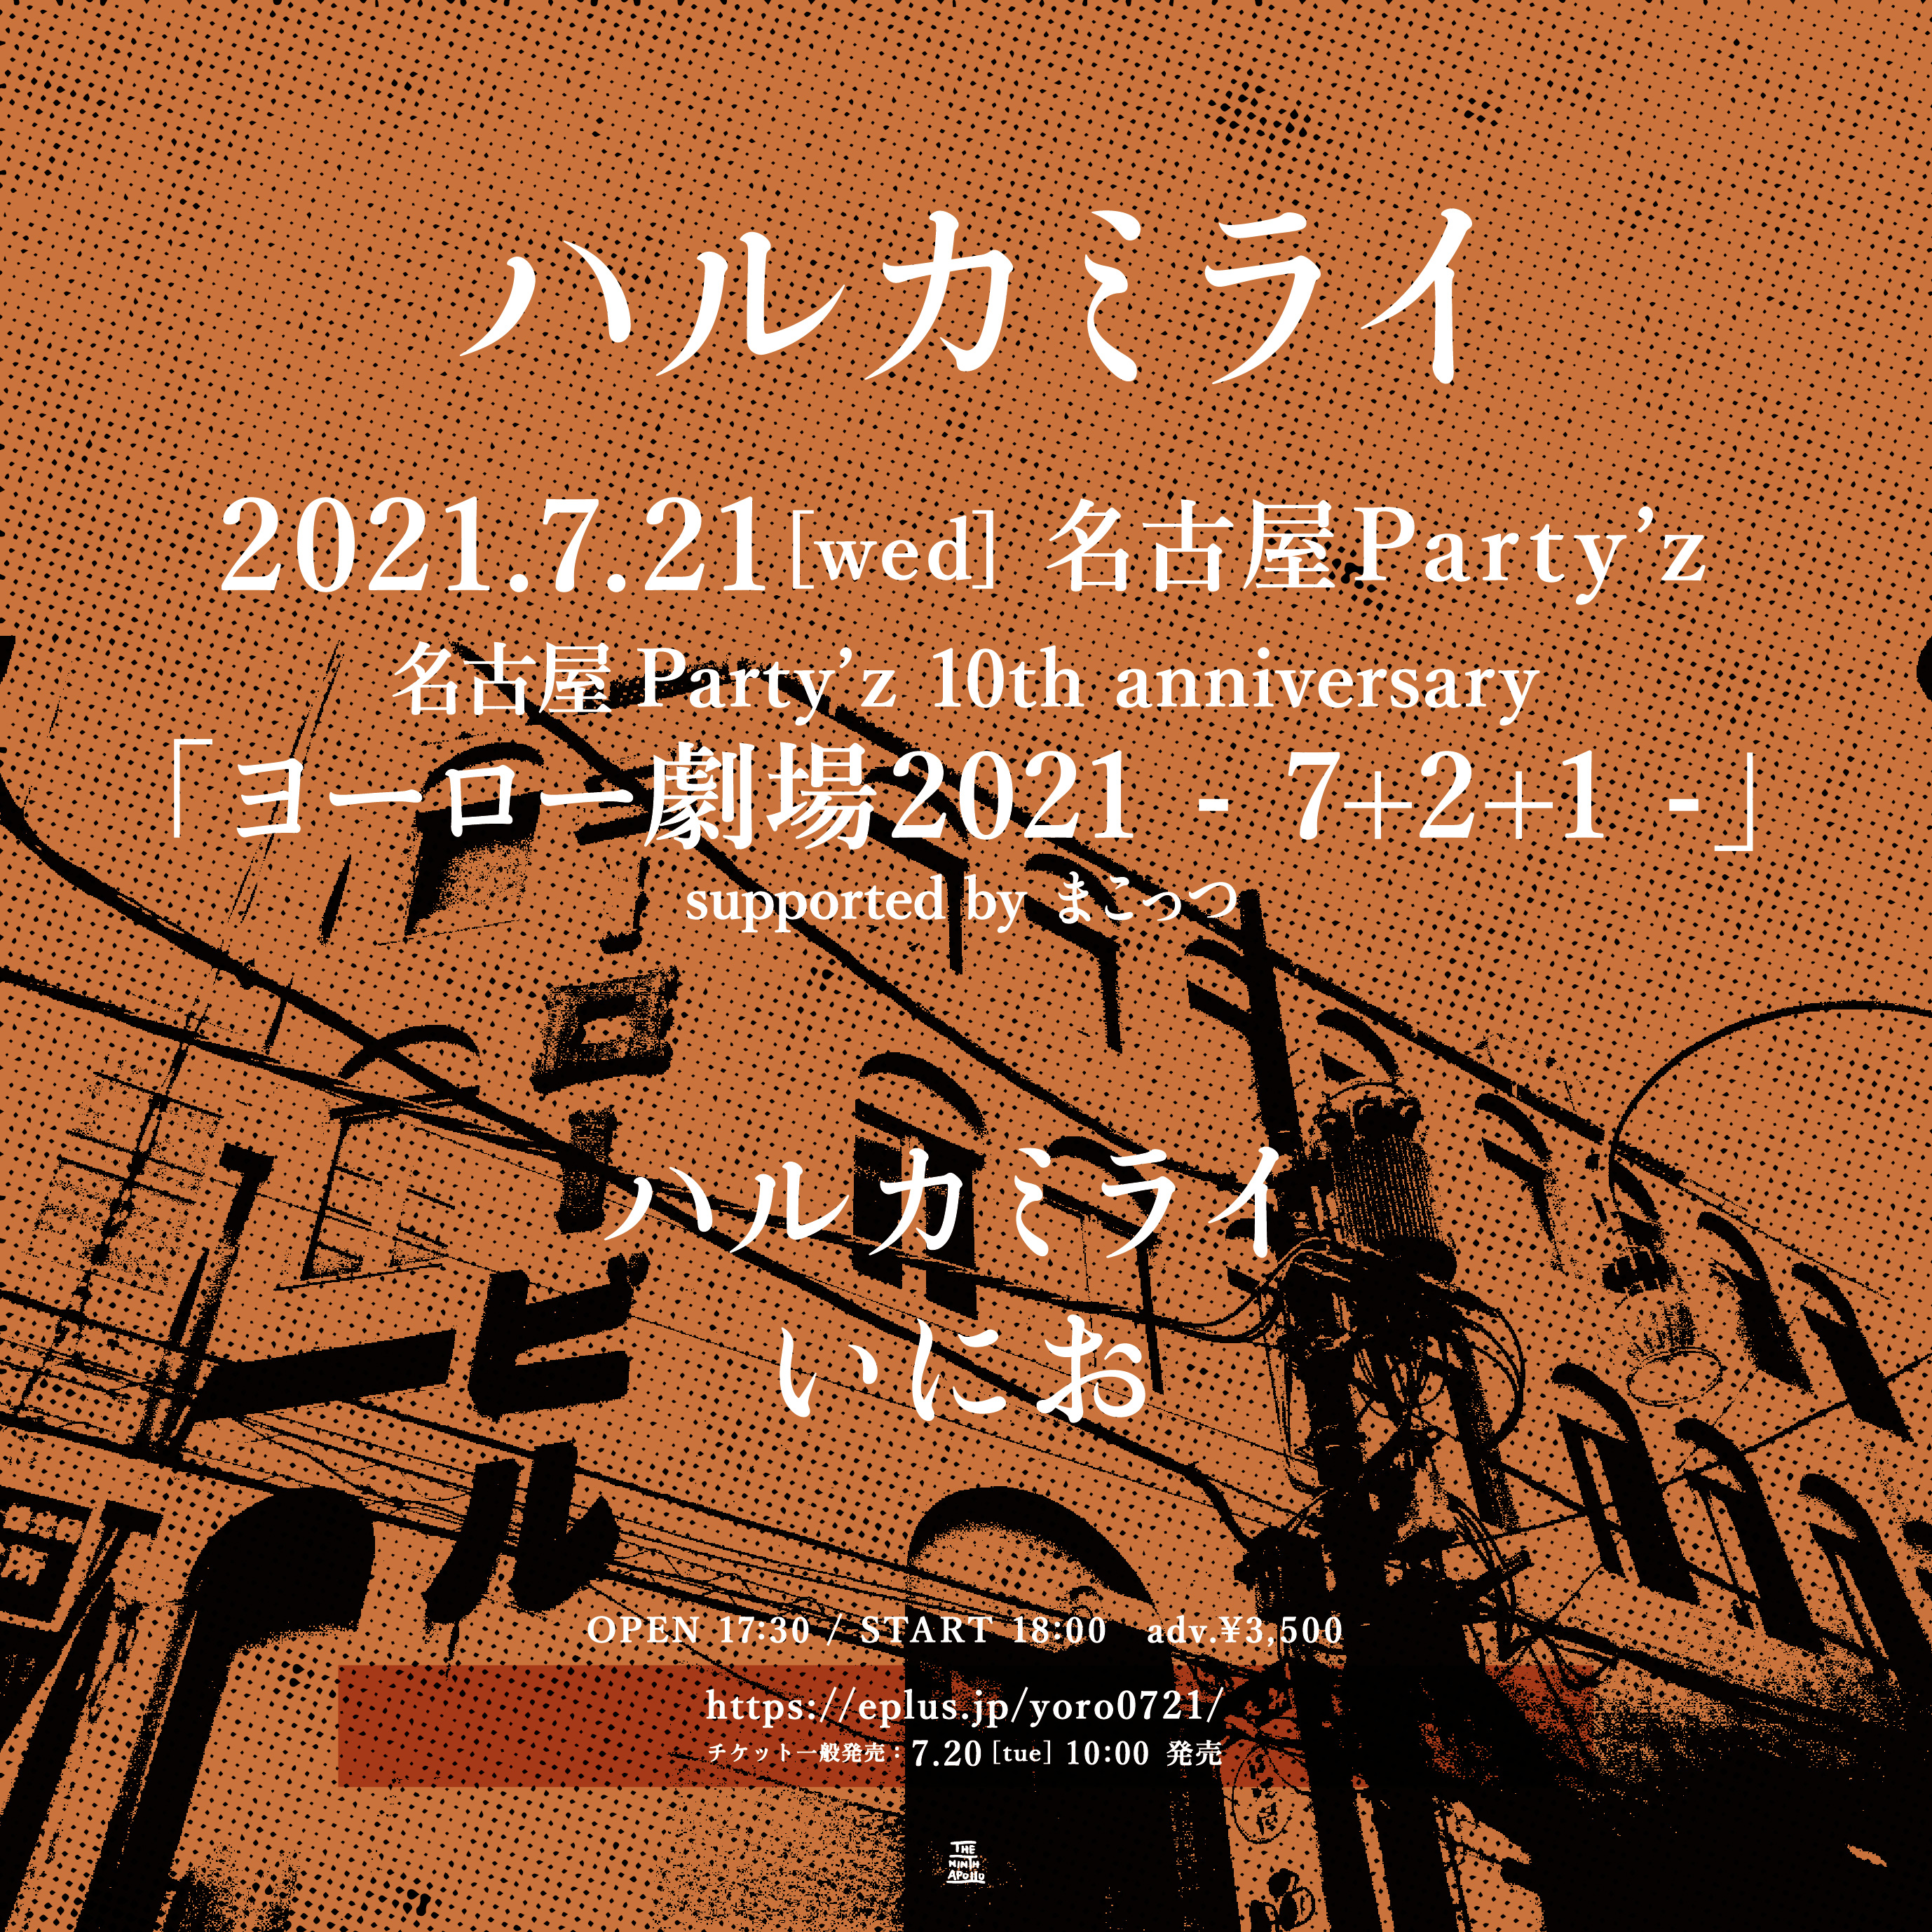 ハルカミライ「ヨーロー劇場2021 7+2+1 - 」supported by まこっつ